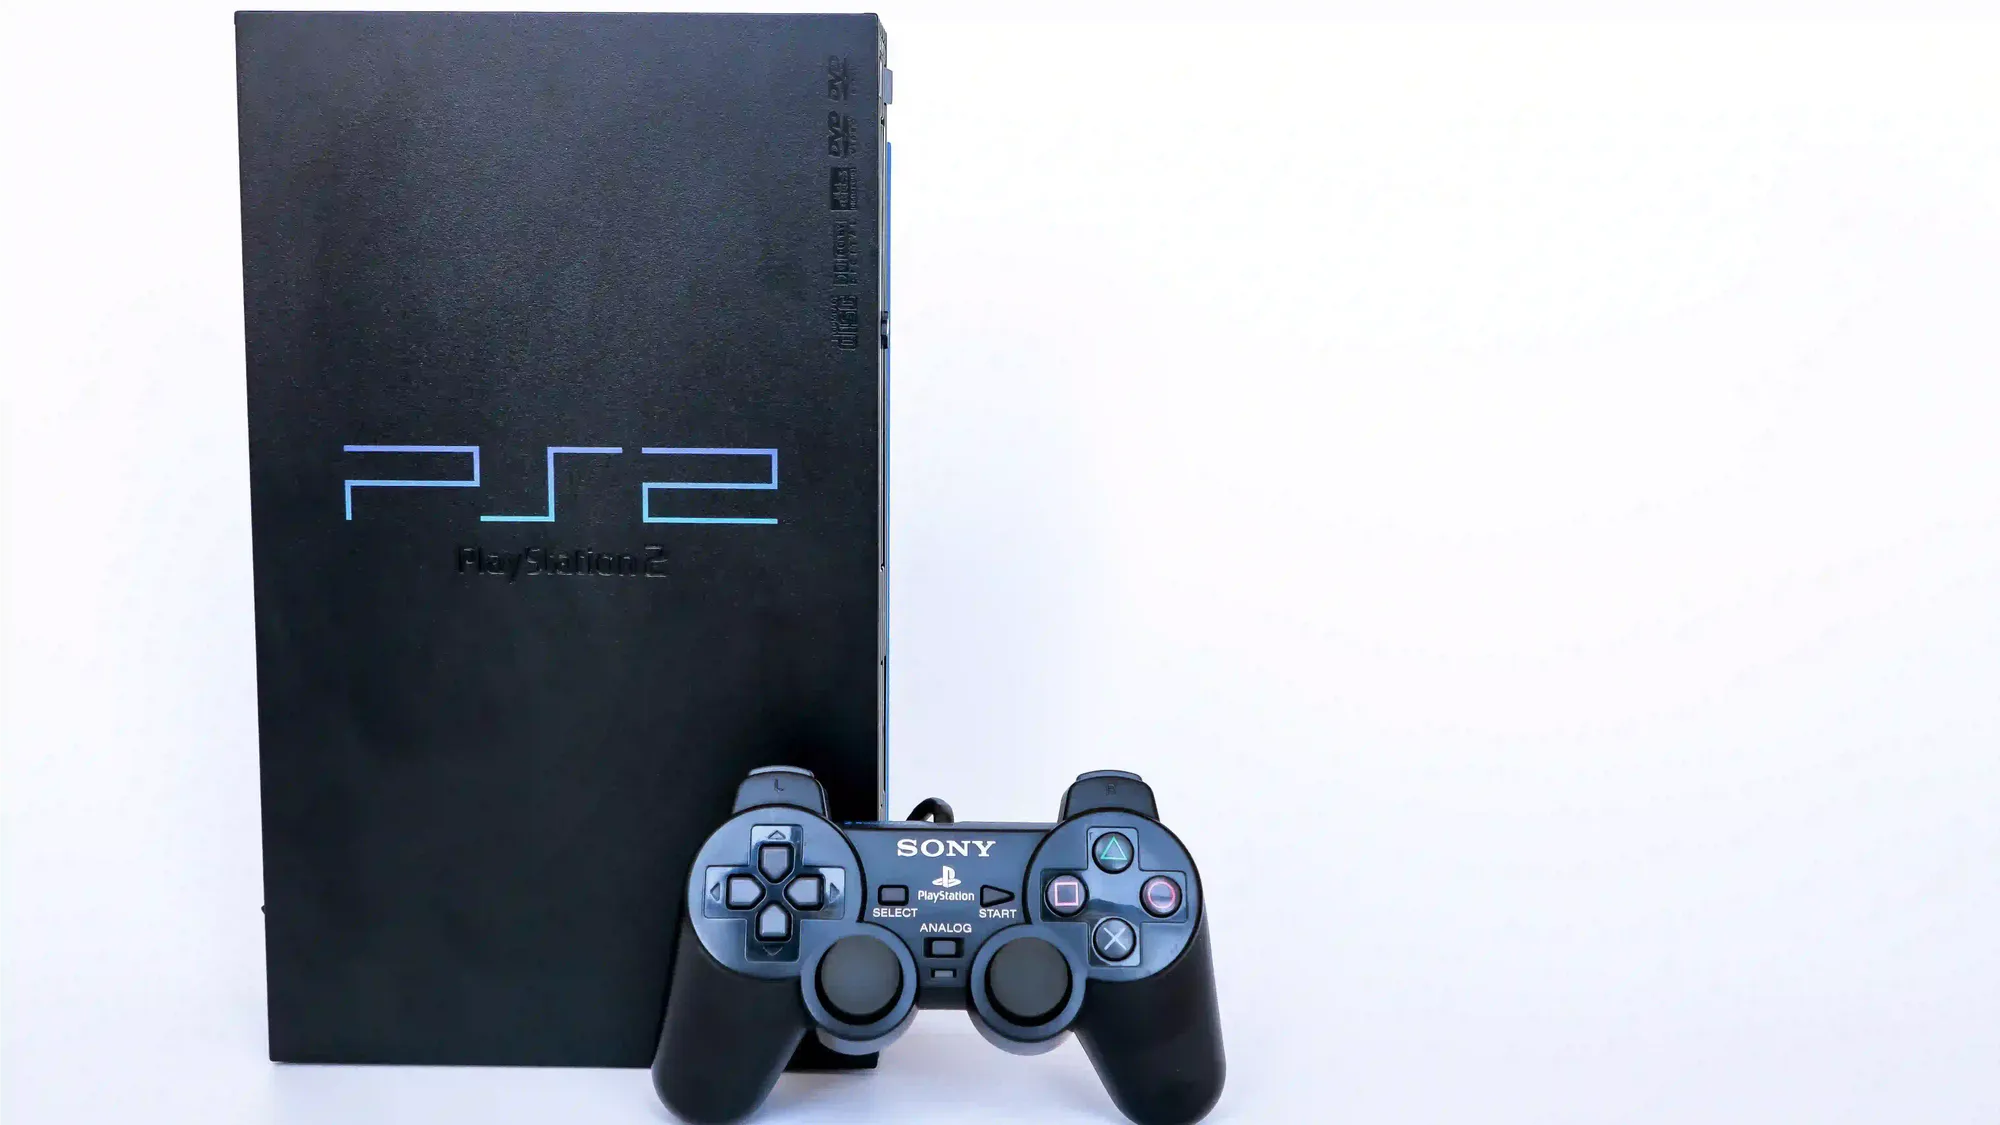 Quanto custa um Playstation 2 hoje em dia?